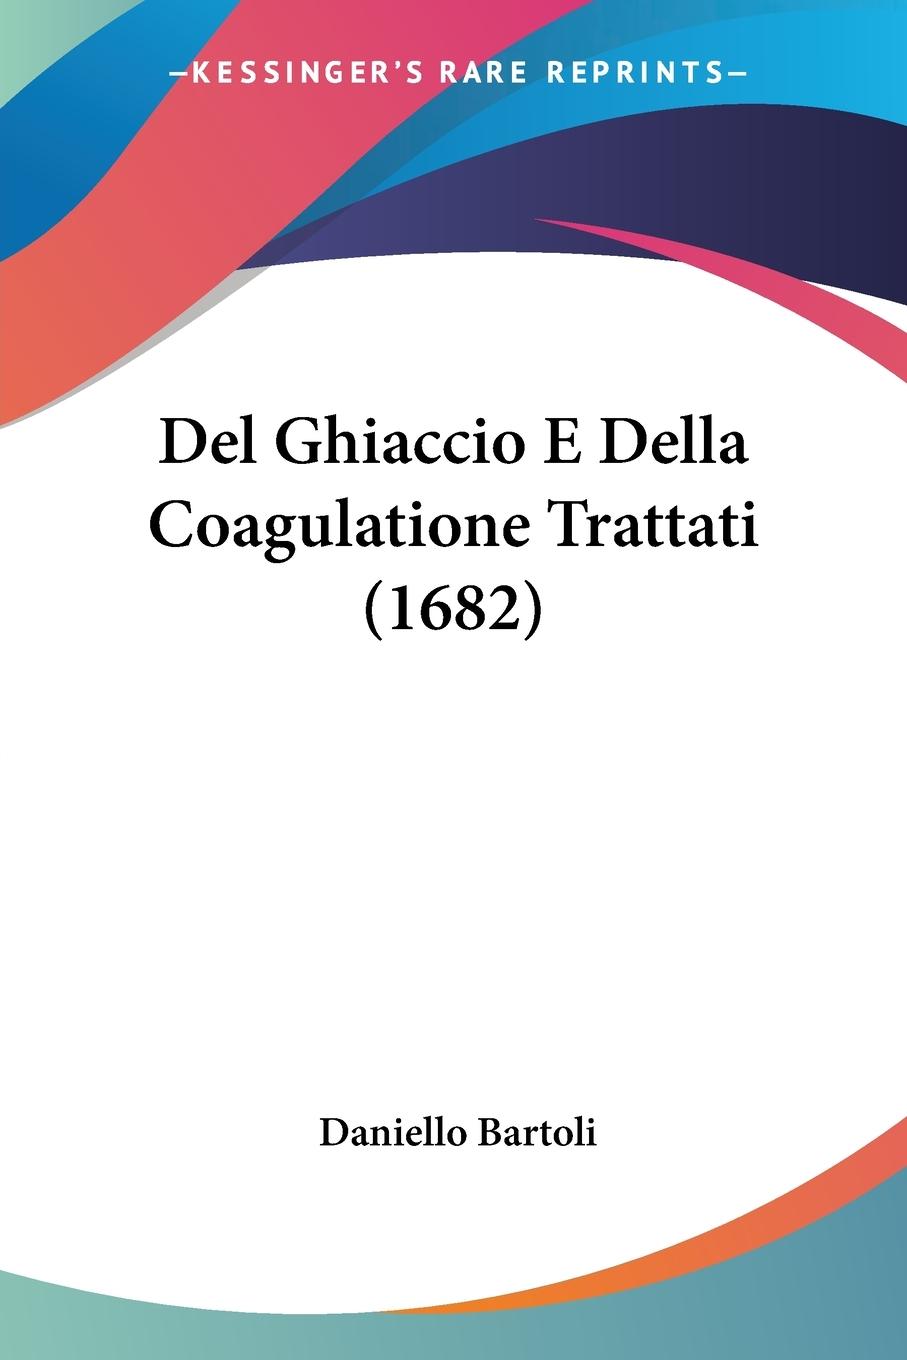 Del Ghiaccio E Della Coagulatione Trattati (1682) - Bartoli, Daniello